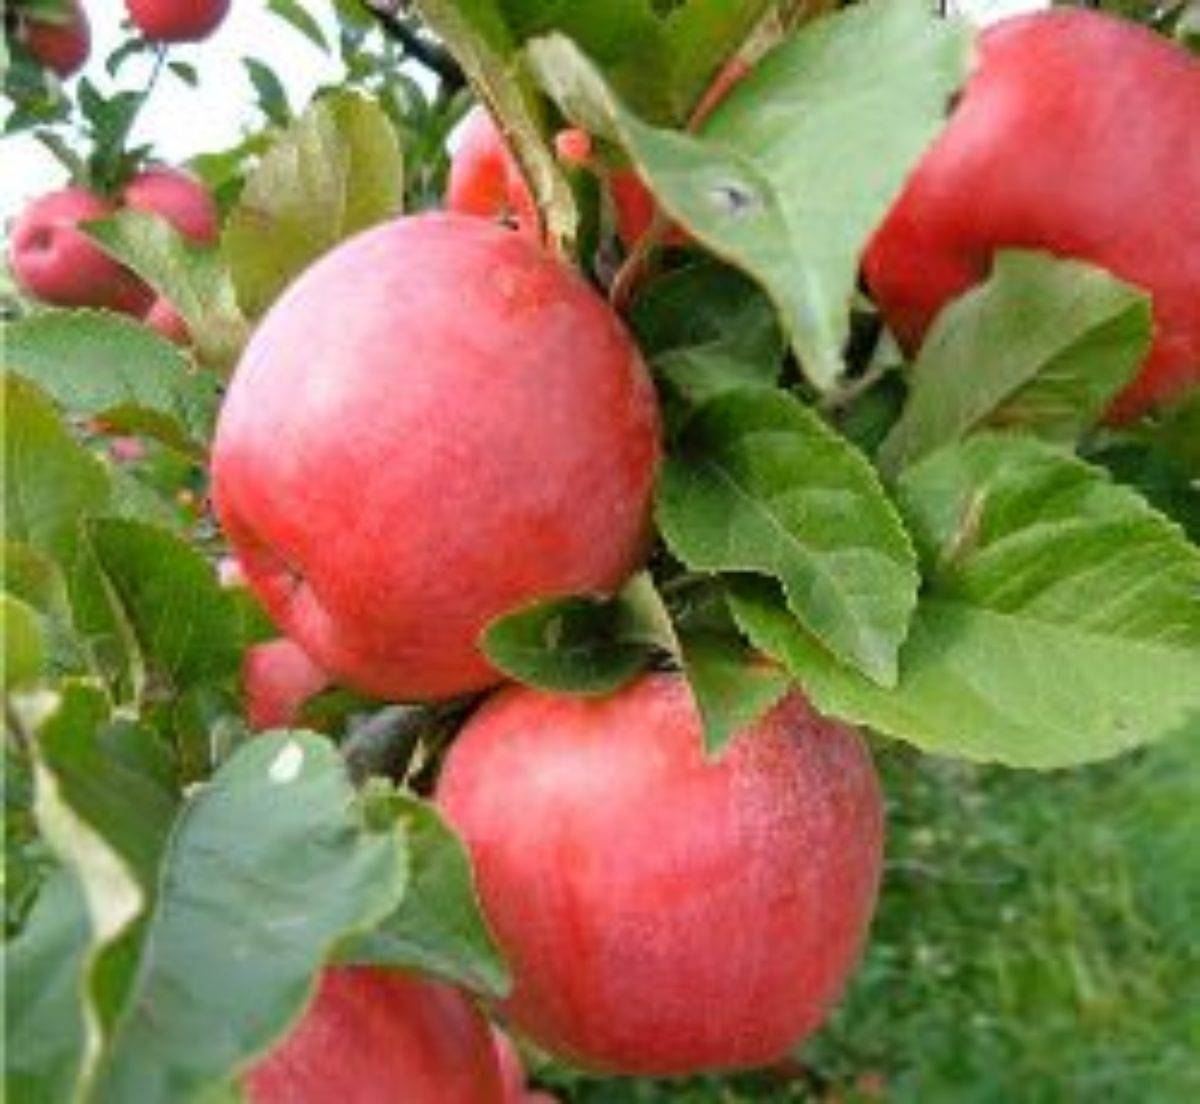 Плодовые деревья для сада — яблоня глостер